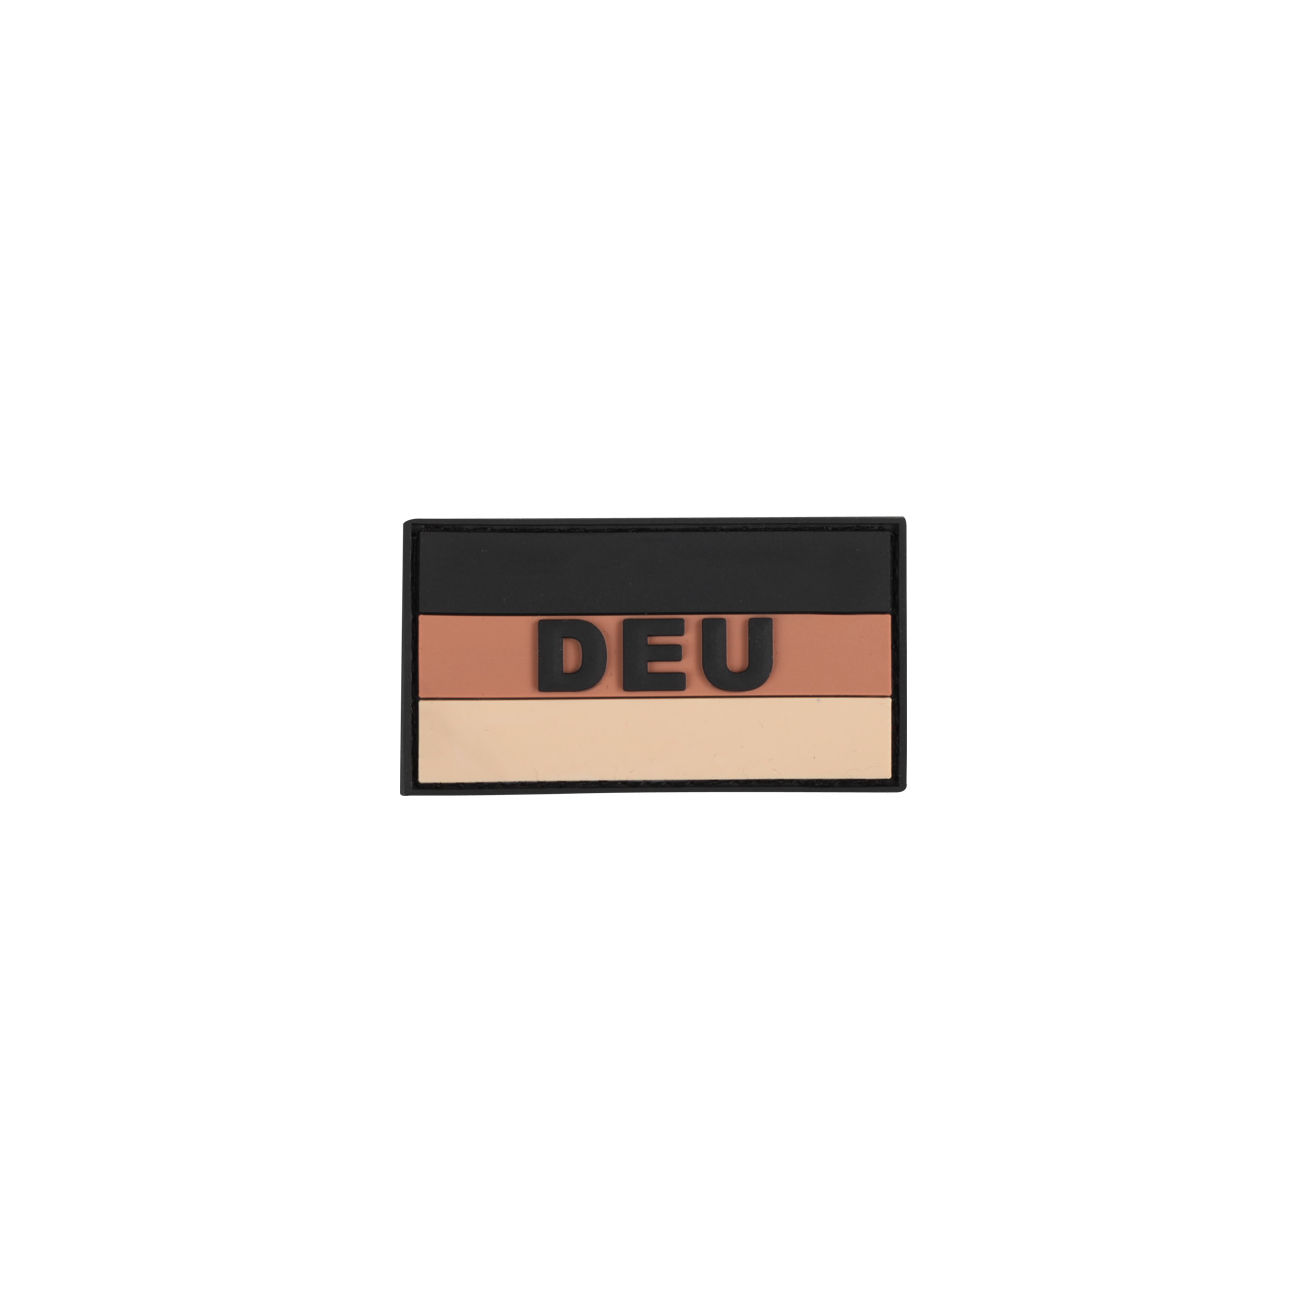 3D Rubber Patch Deutschlandflagge DEU khaki